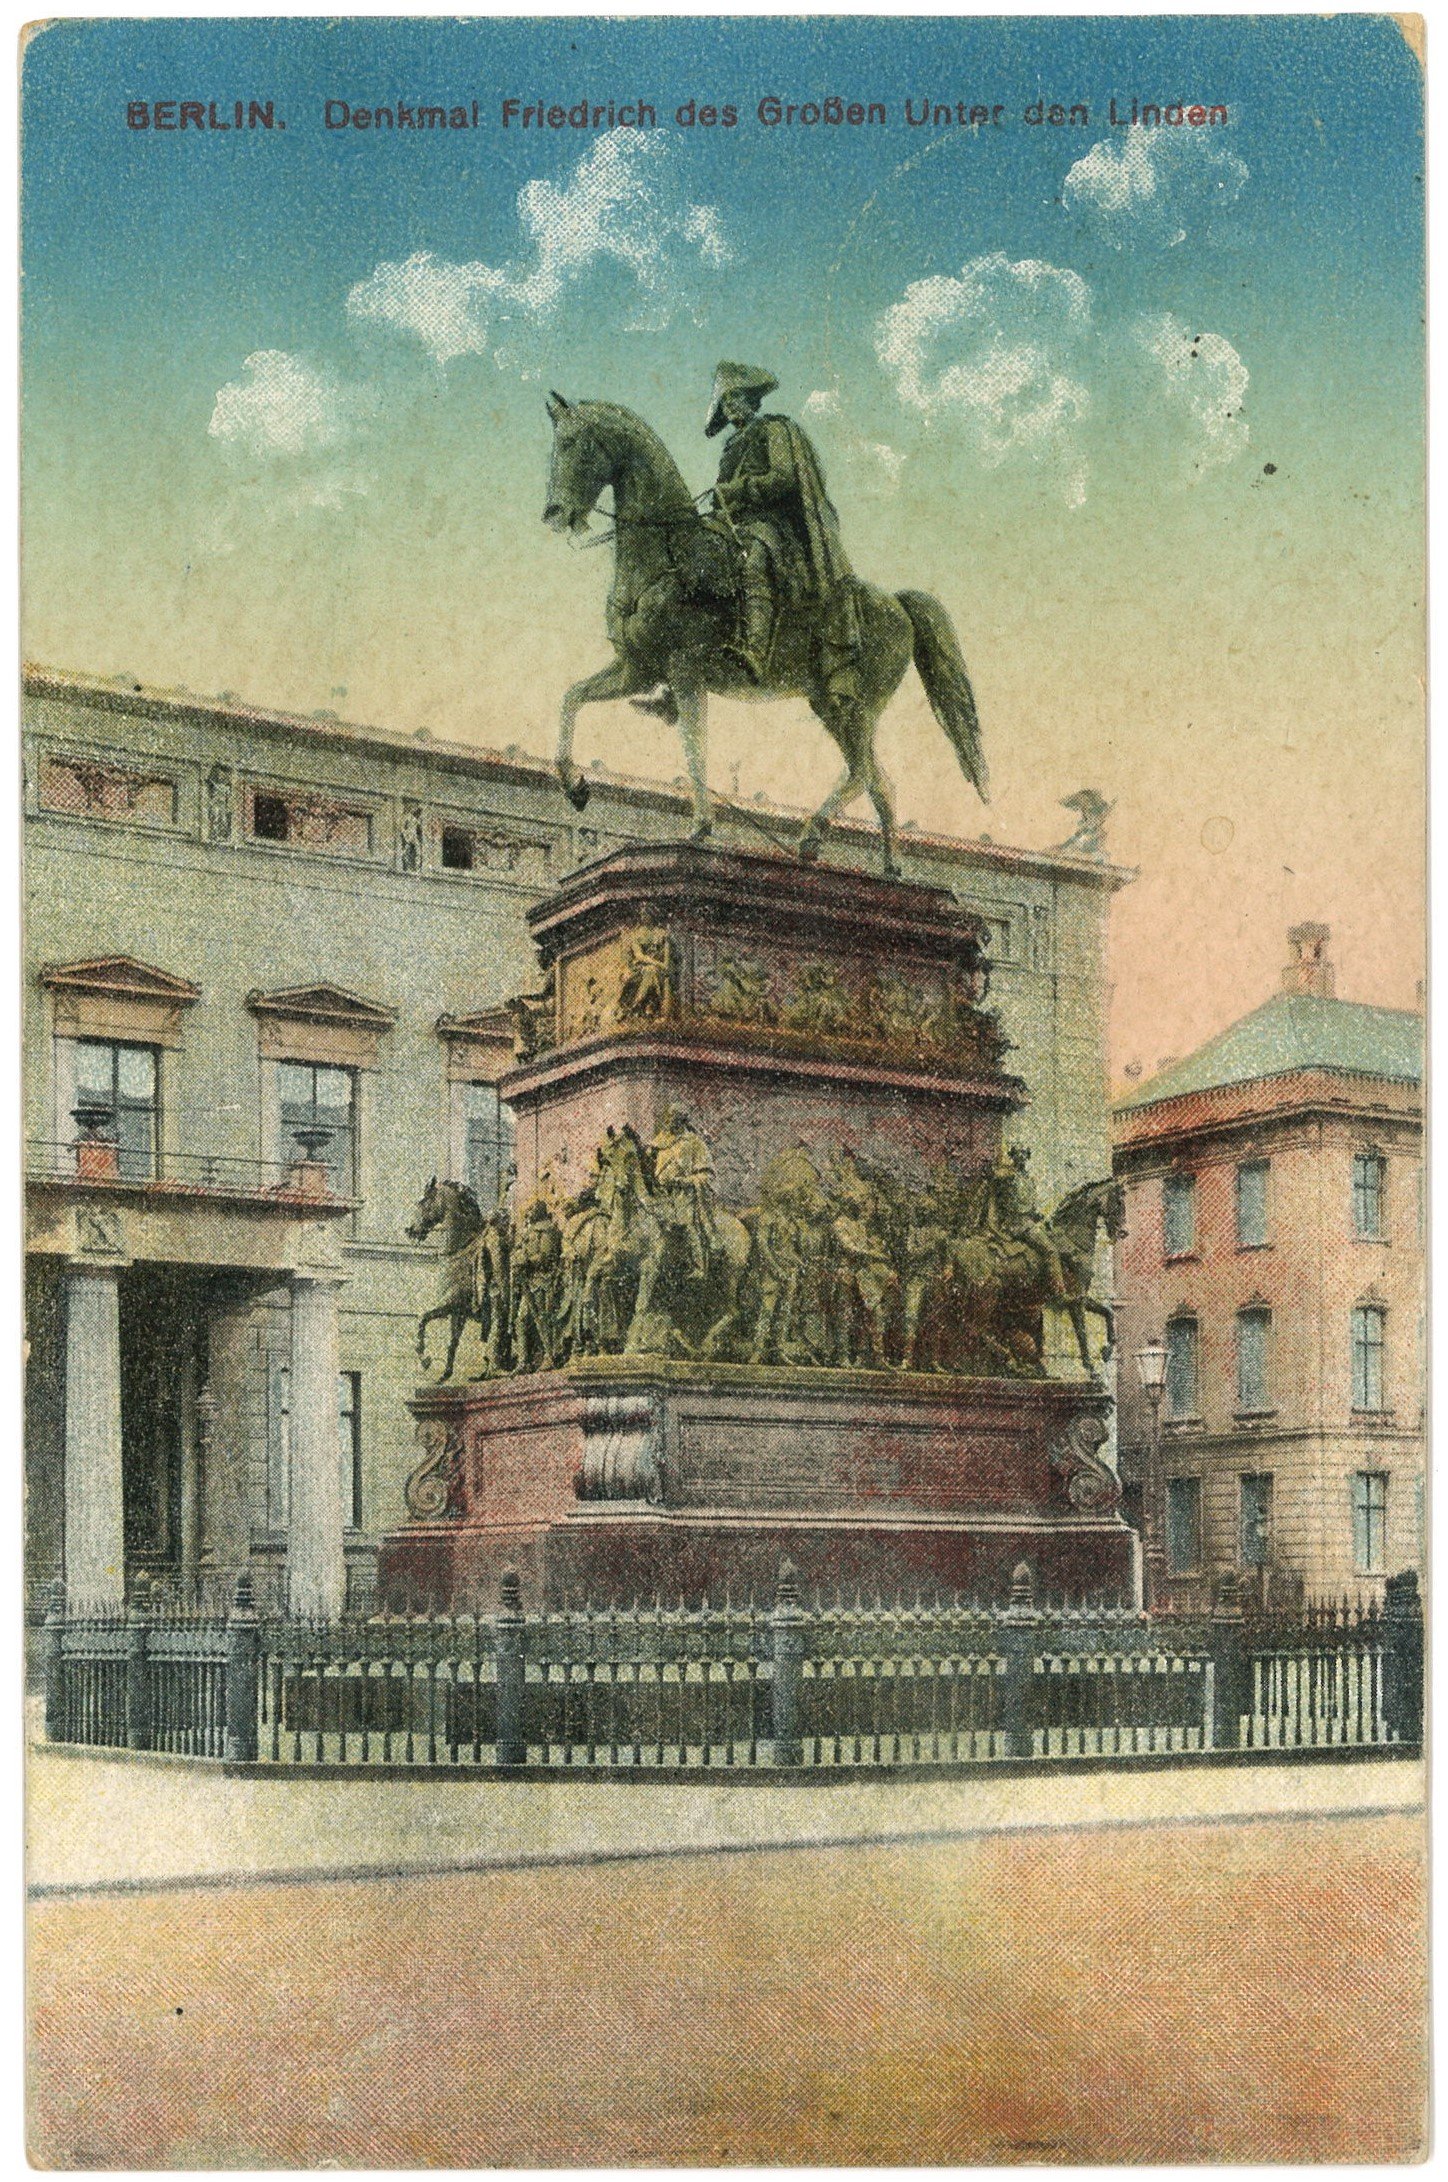 Berlin-Mitte: Reiterstandbild Friedrichs des Großen (Landesgeschichtliche Vereinigung für die Mark Brandenburg e.V. CC BY)